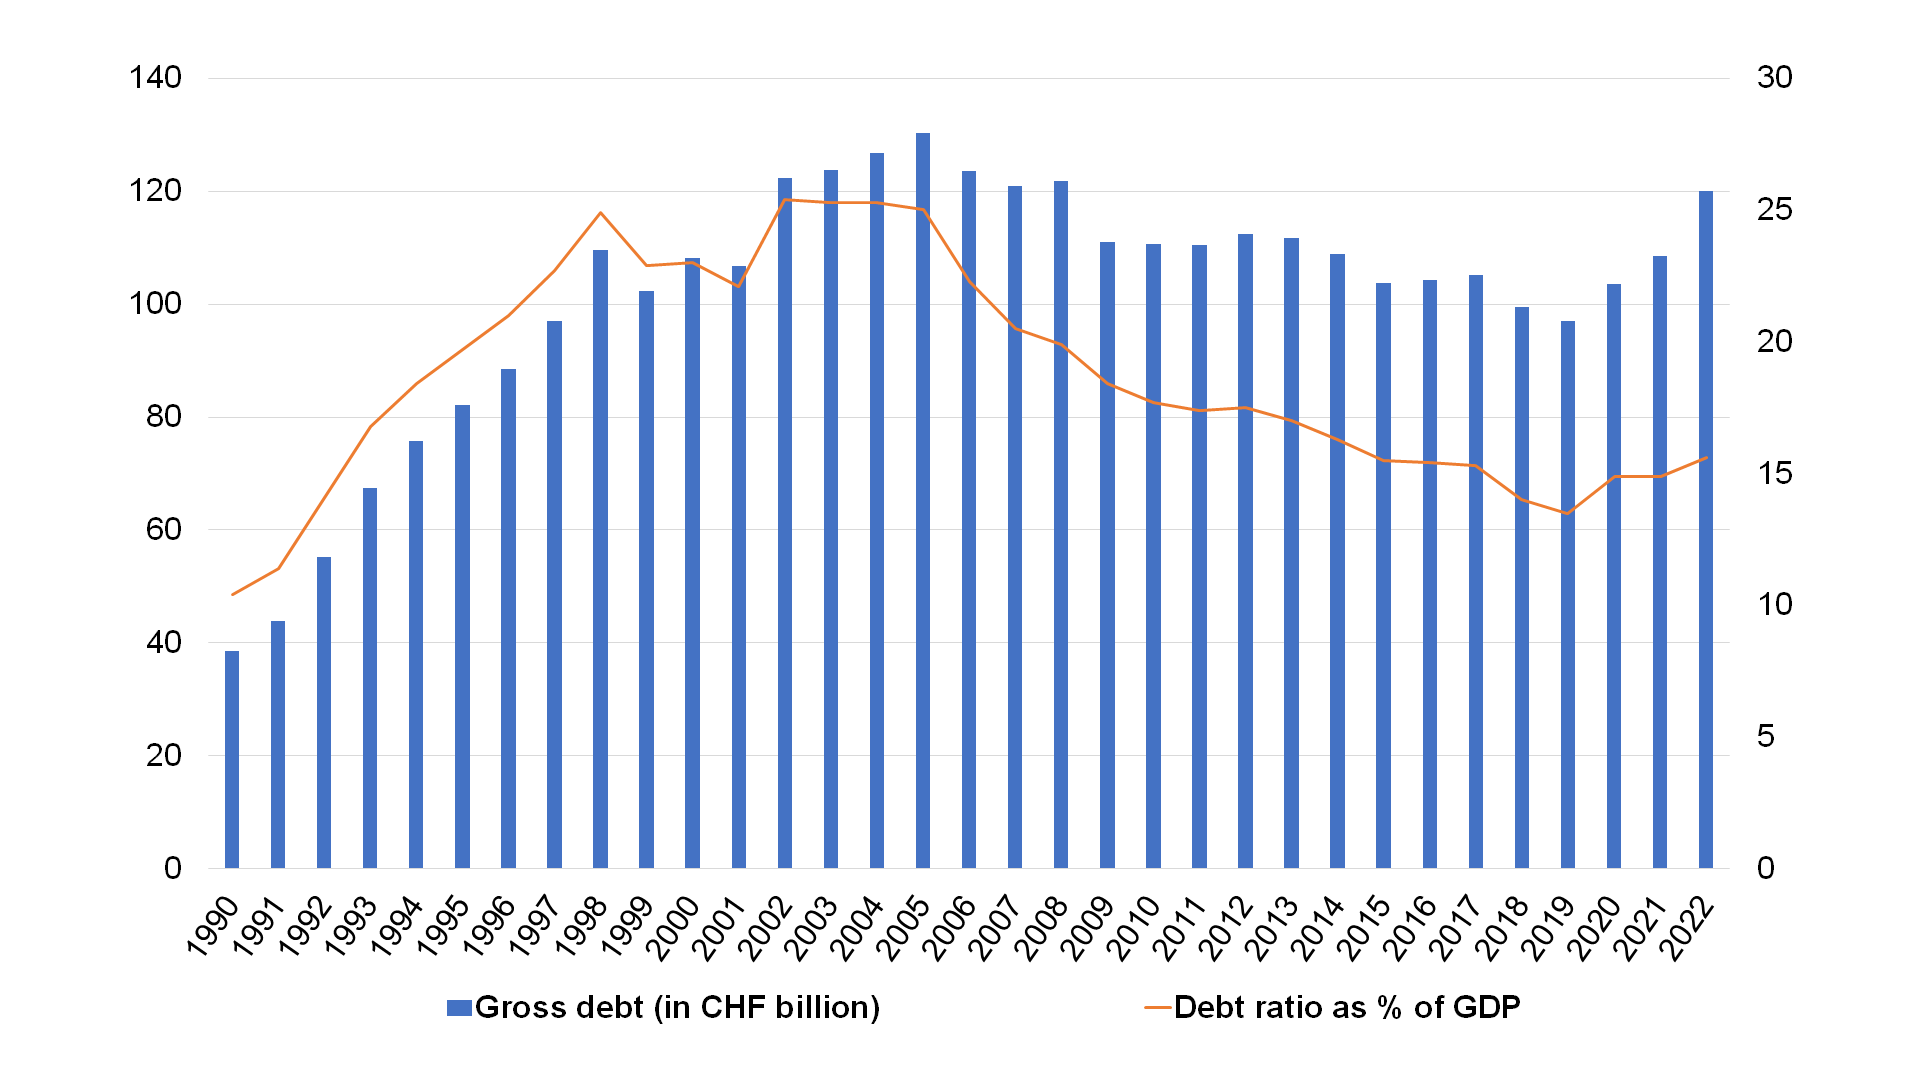 Debt and debt ratio trends between 1990 and 2022